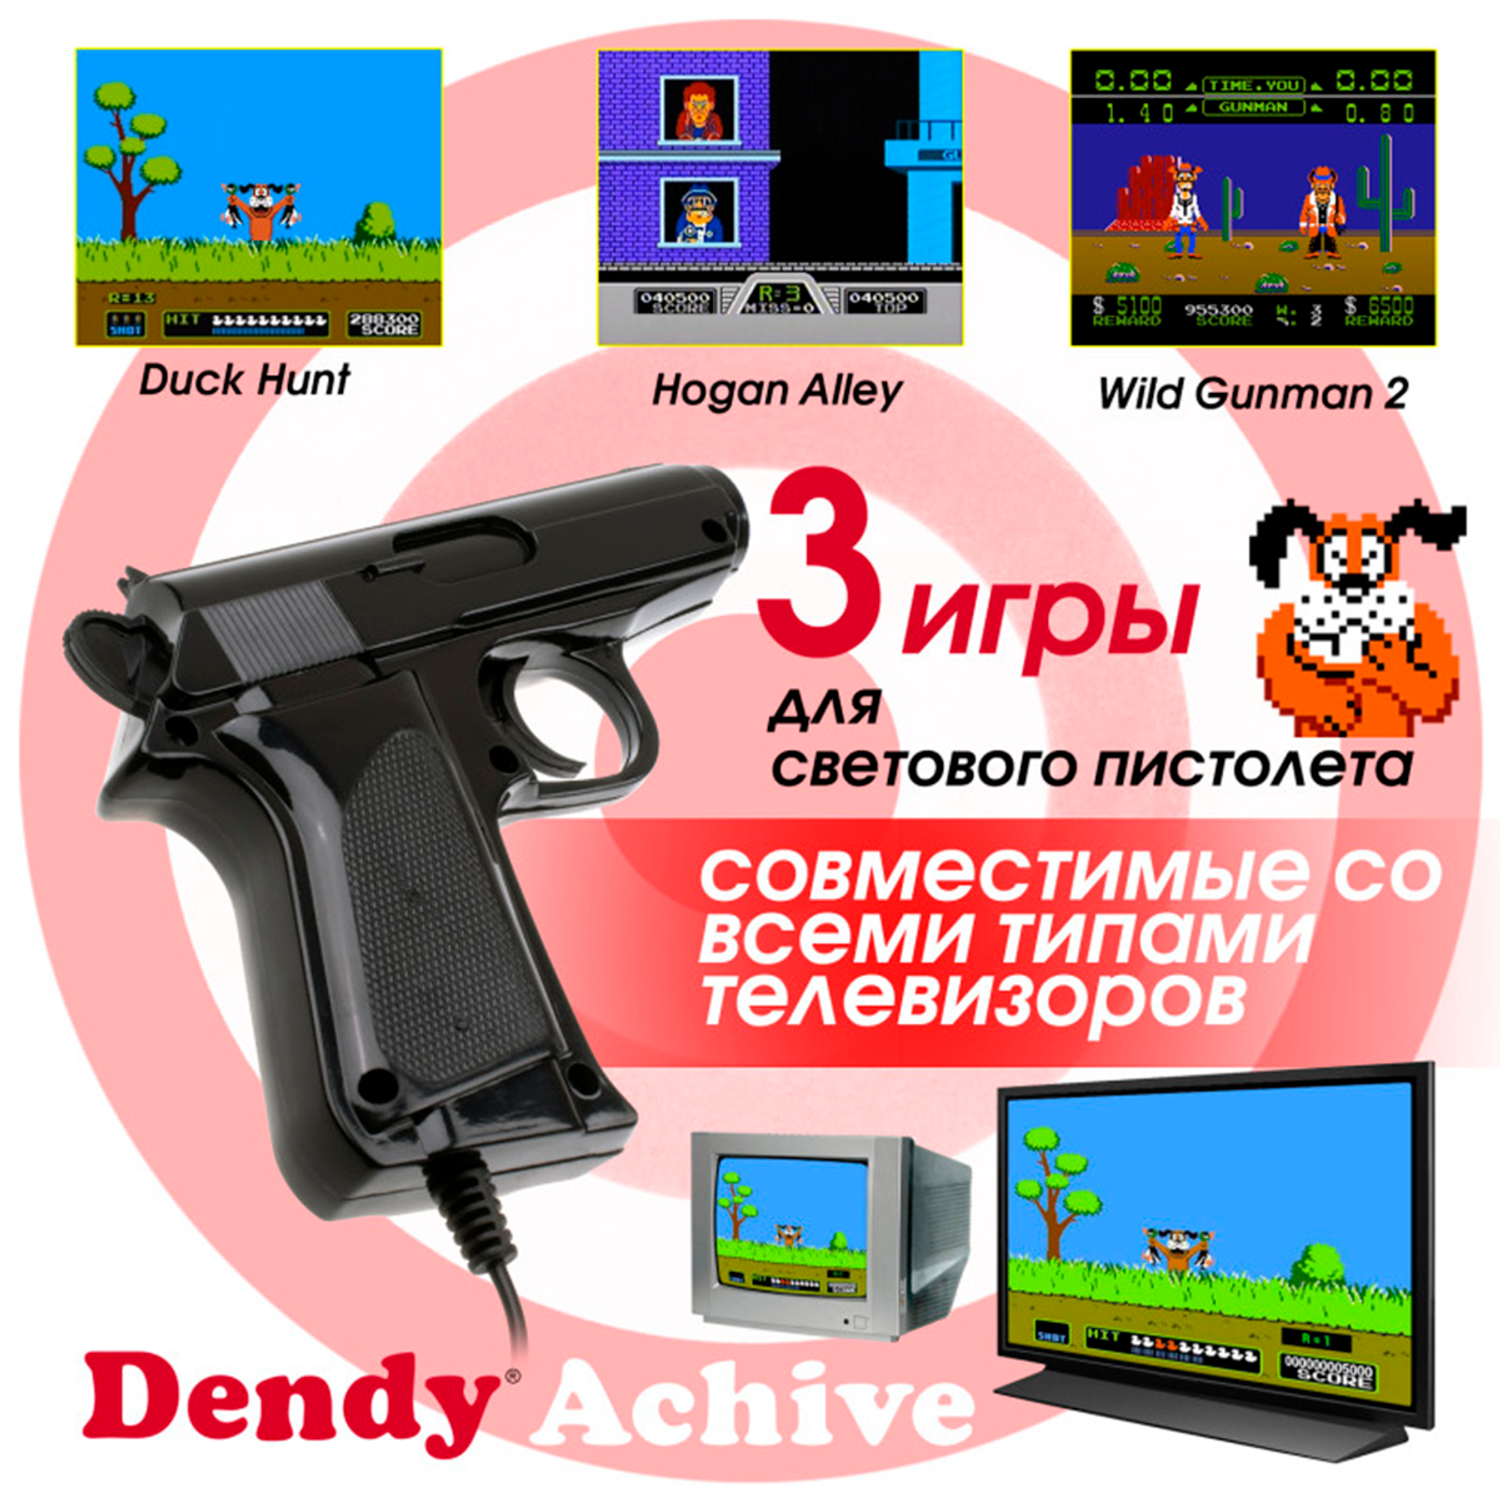 Игровая приставка Dendy Achive 640 игр и световой пистолет серая - фото 4